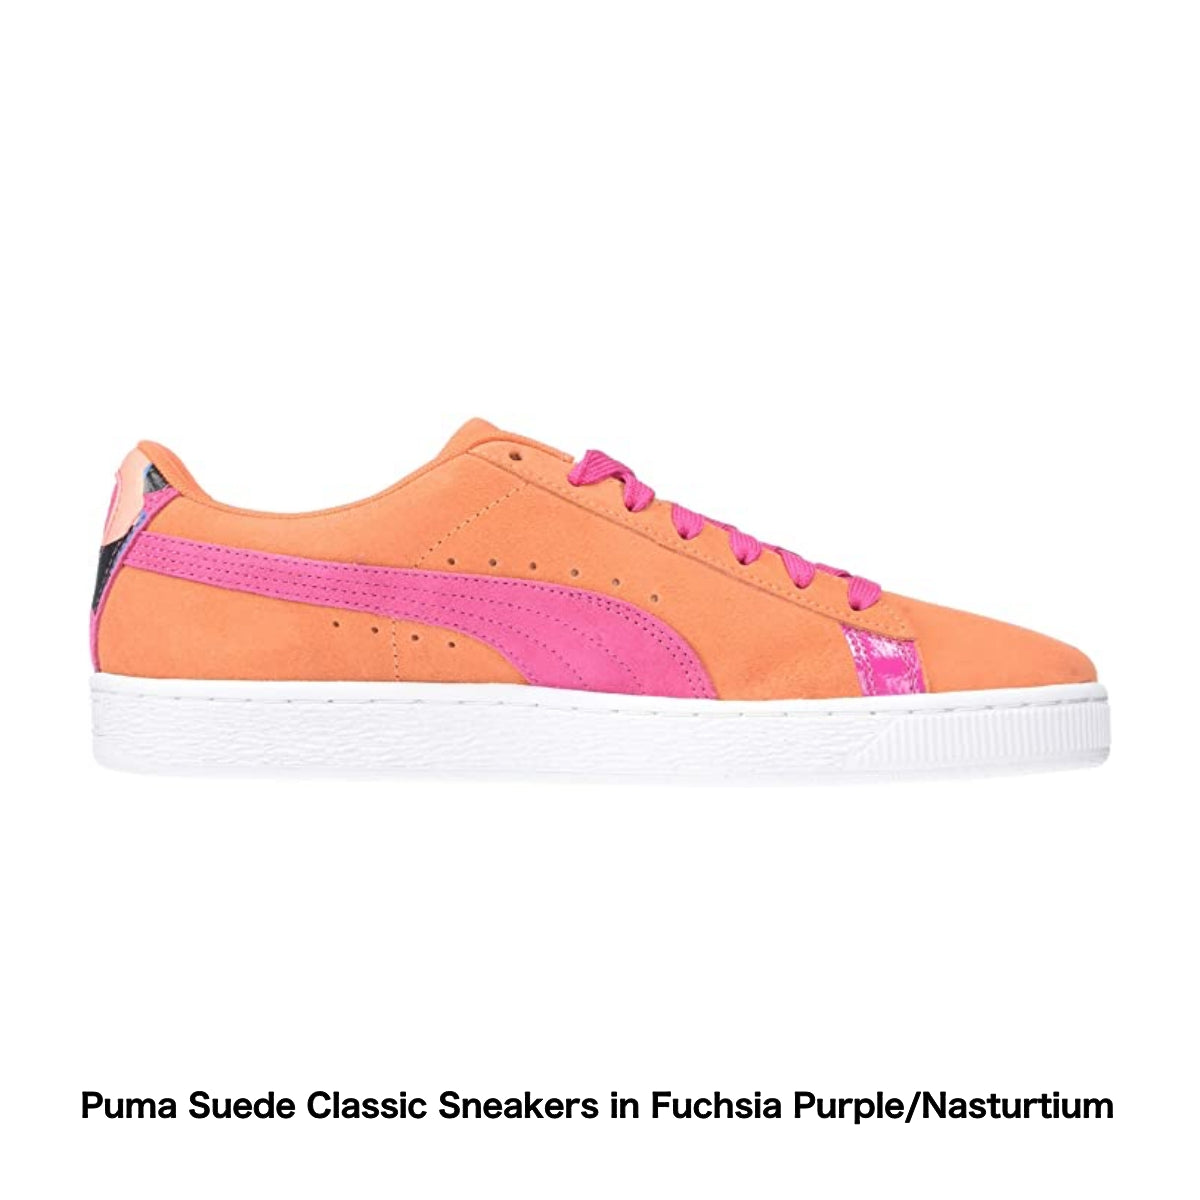 Puma Suede Classic Sneakers in Fuchsia Purple/Nasturtium - Amazon